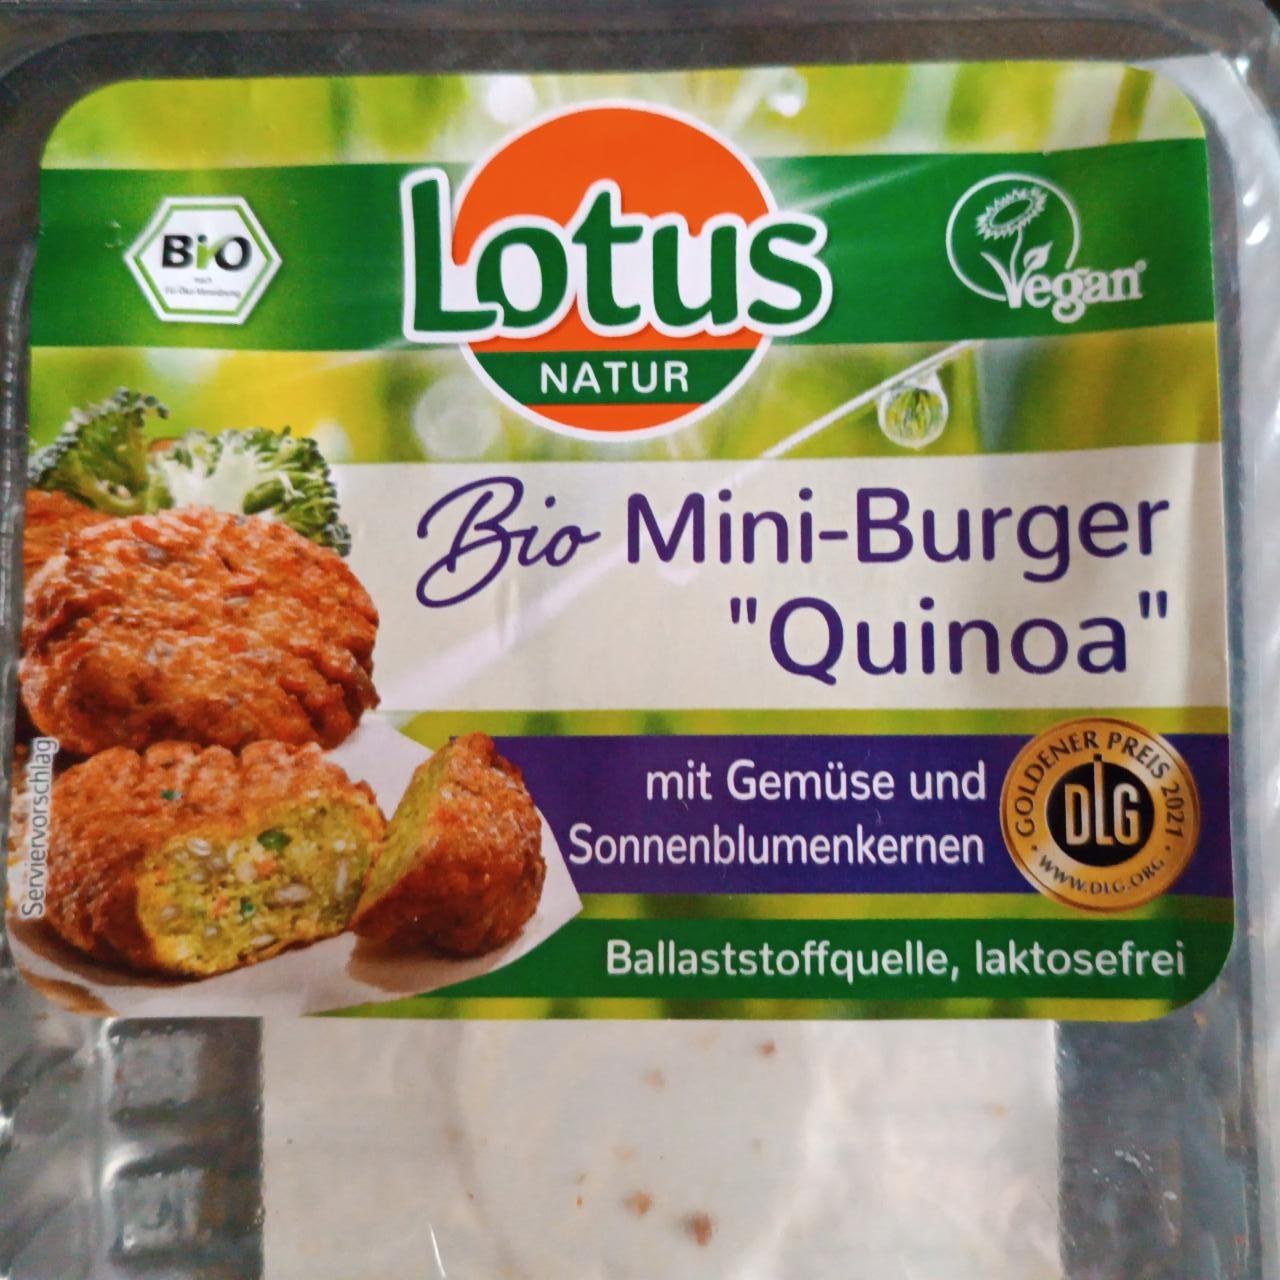 Fotografie - Bio-Mini-Burger “Quinoa” Vegan Lotus Natur